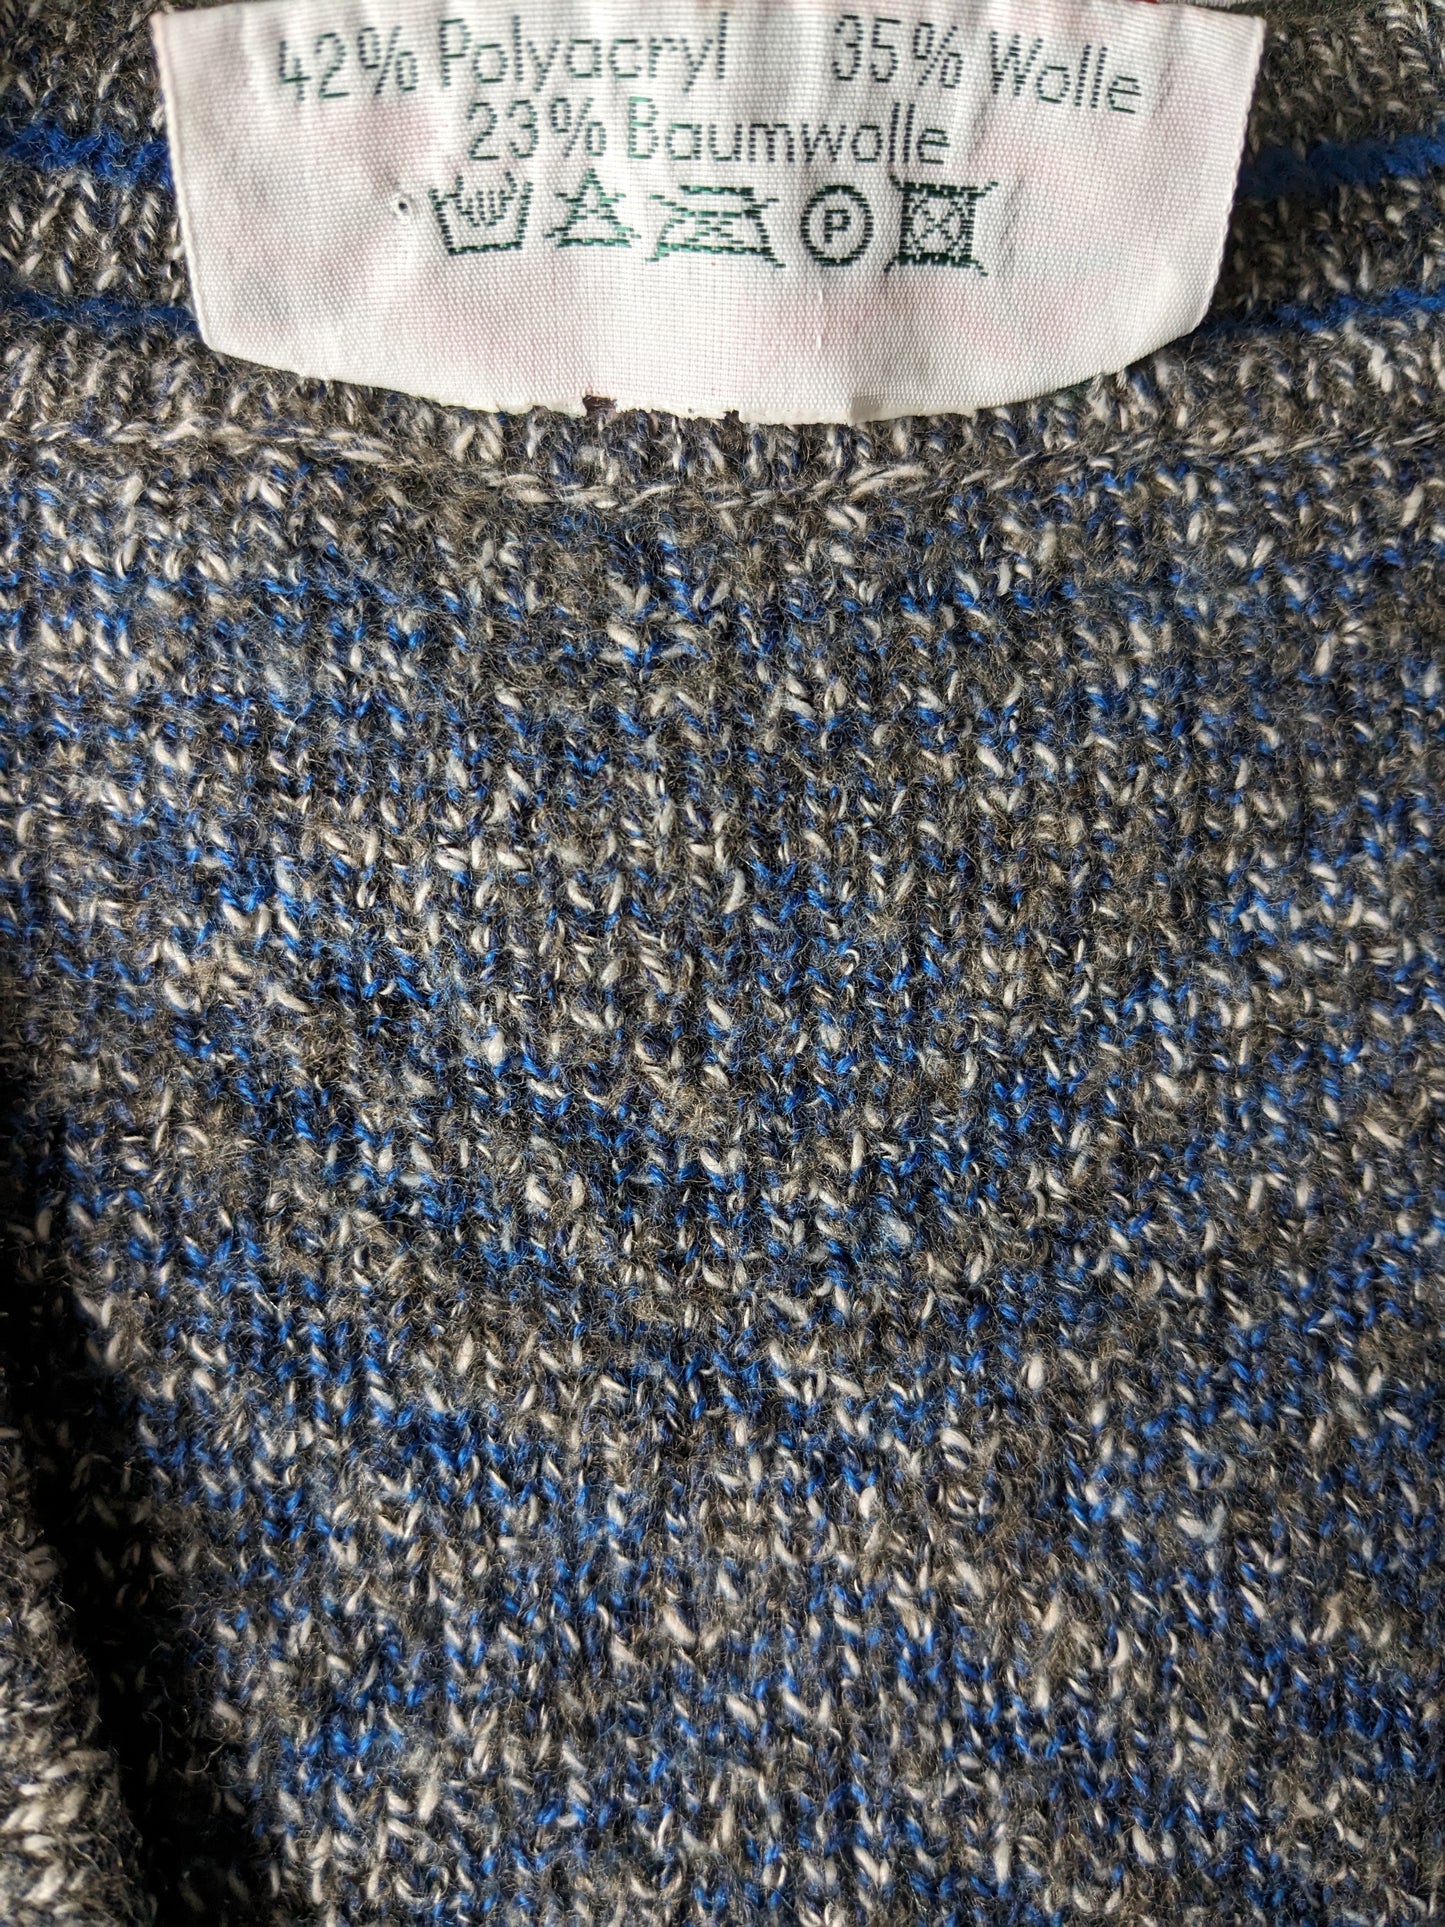 Maglione vintage massimo dati con scollo a V. Colorato blu grigio. Dimensione L. (35% lana)